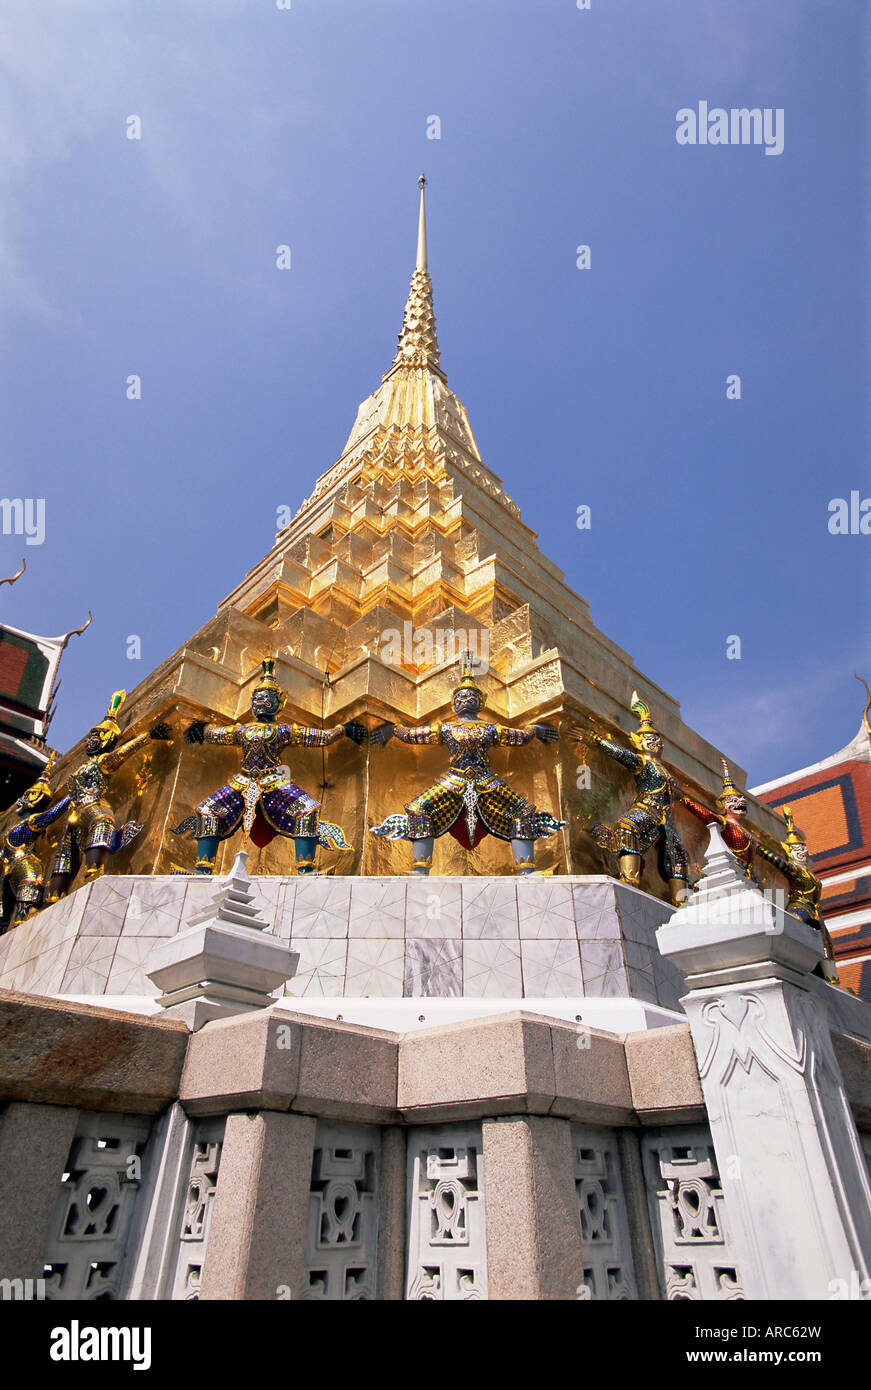 Guglia dorata, il Tempio del Buddha di Smeraldo (Wat Phra Kaew) al Grand Palace, Bangkok, Thailandia, Sud-est asiatico, in Asia Foto Stock